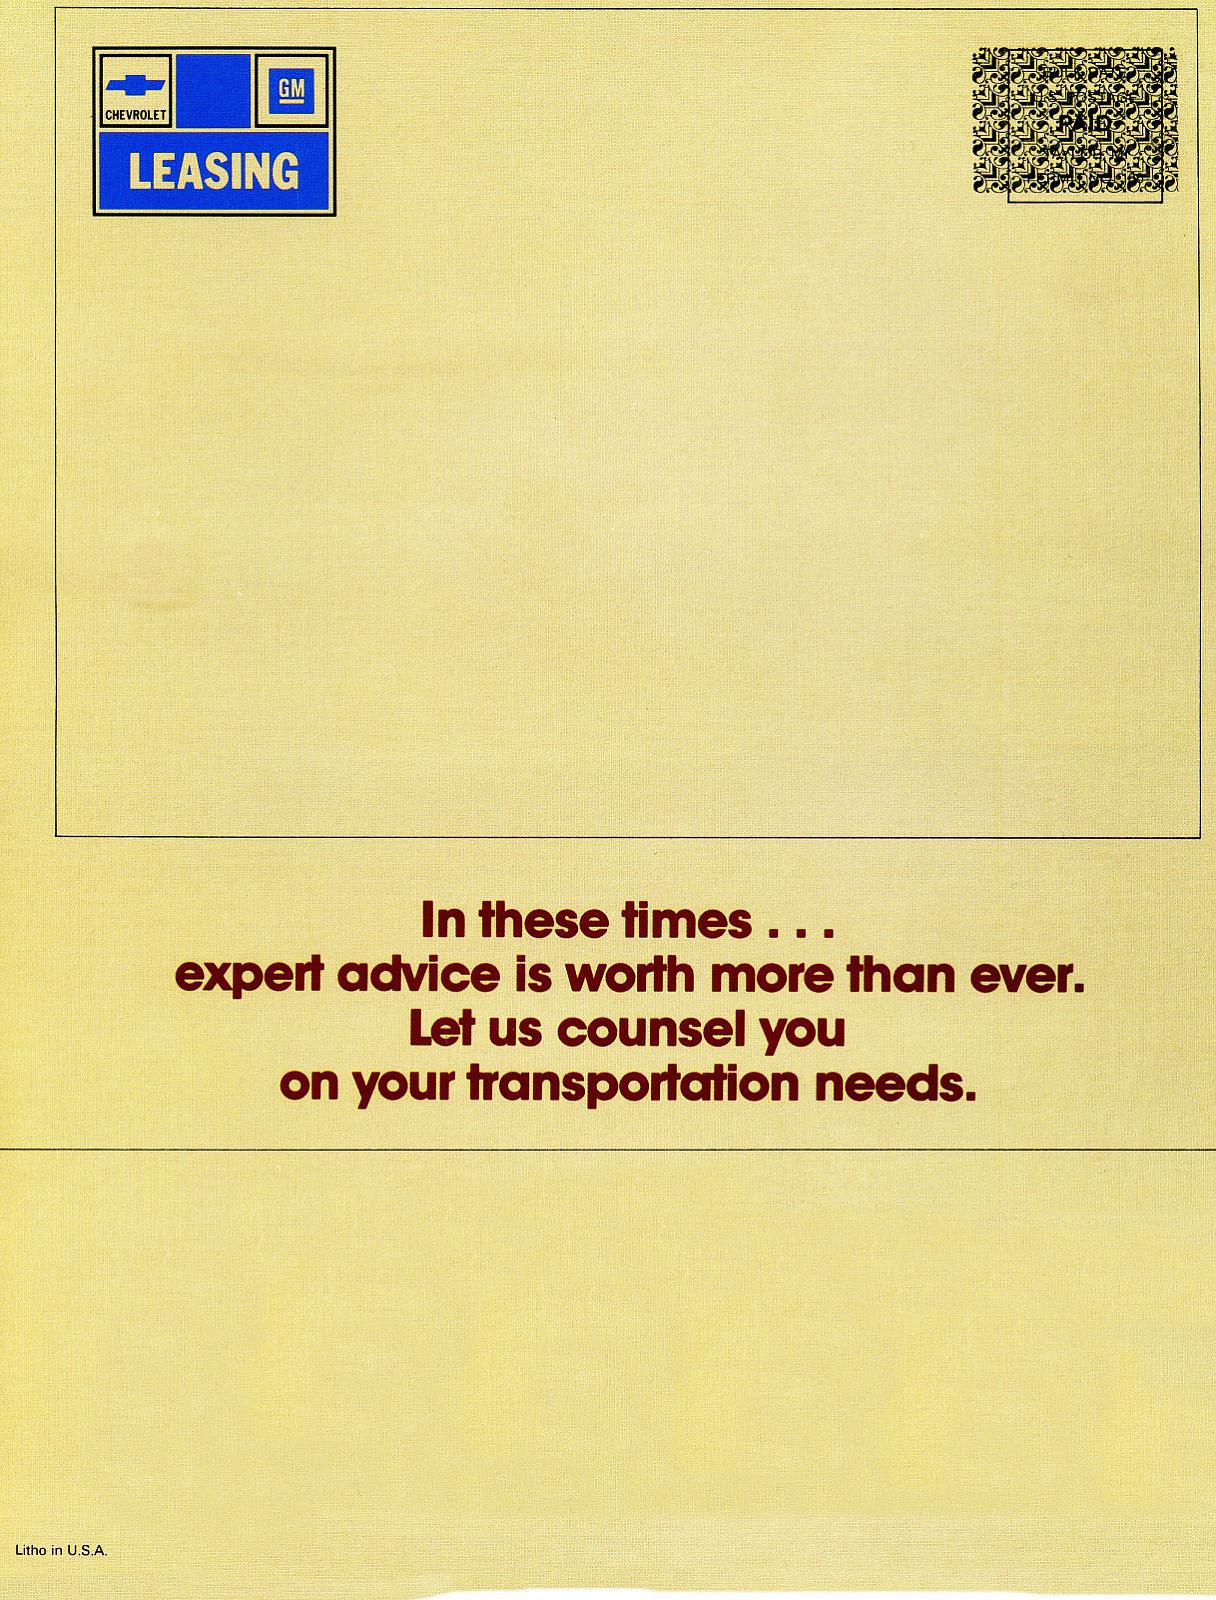 1981_Chevrolet_Transportation_Mailer-04